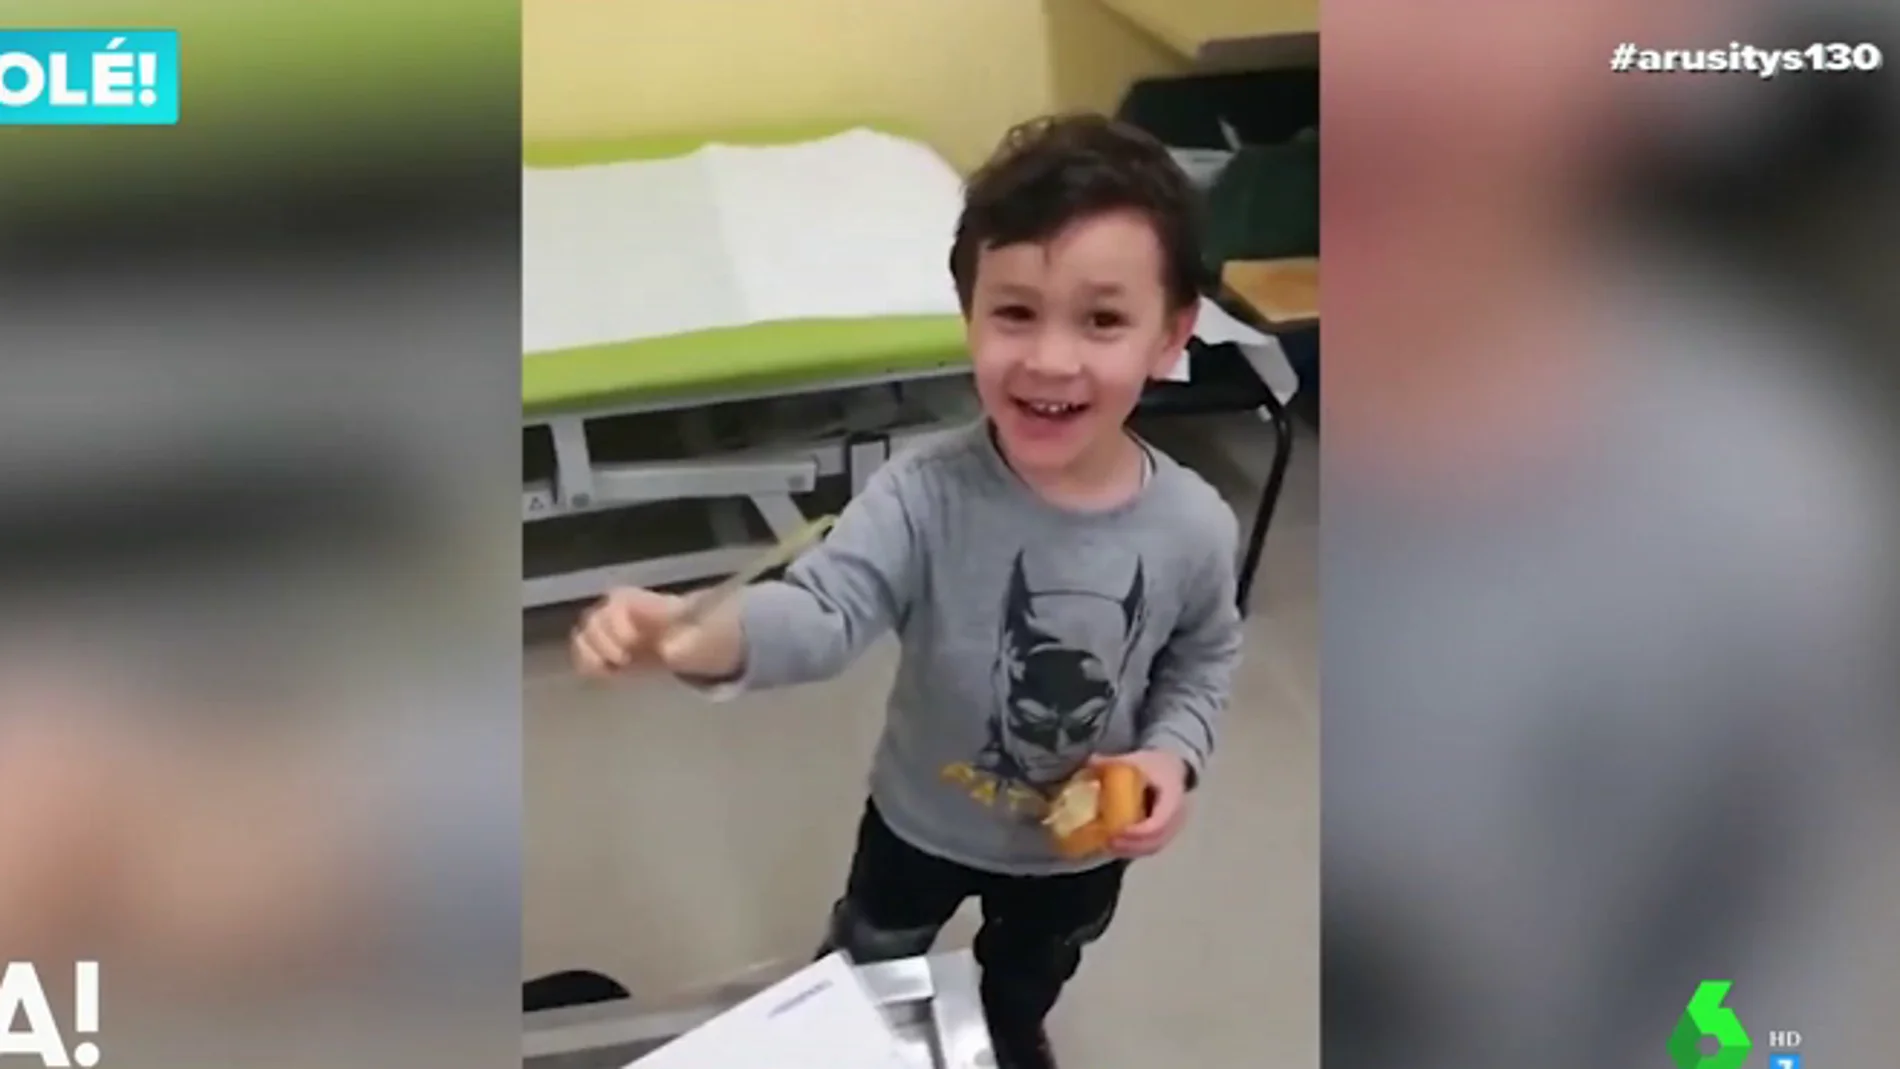 La emocionante reacción de un niño al utilizar su brazo ortopédico por primera vez